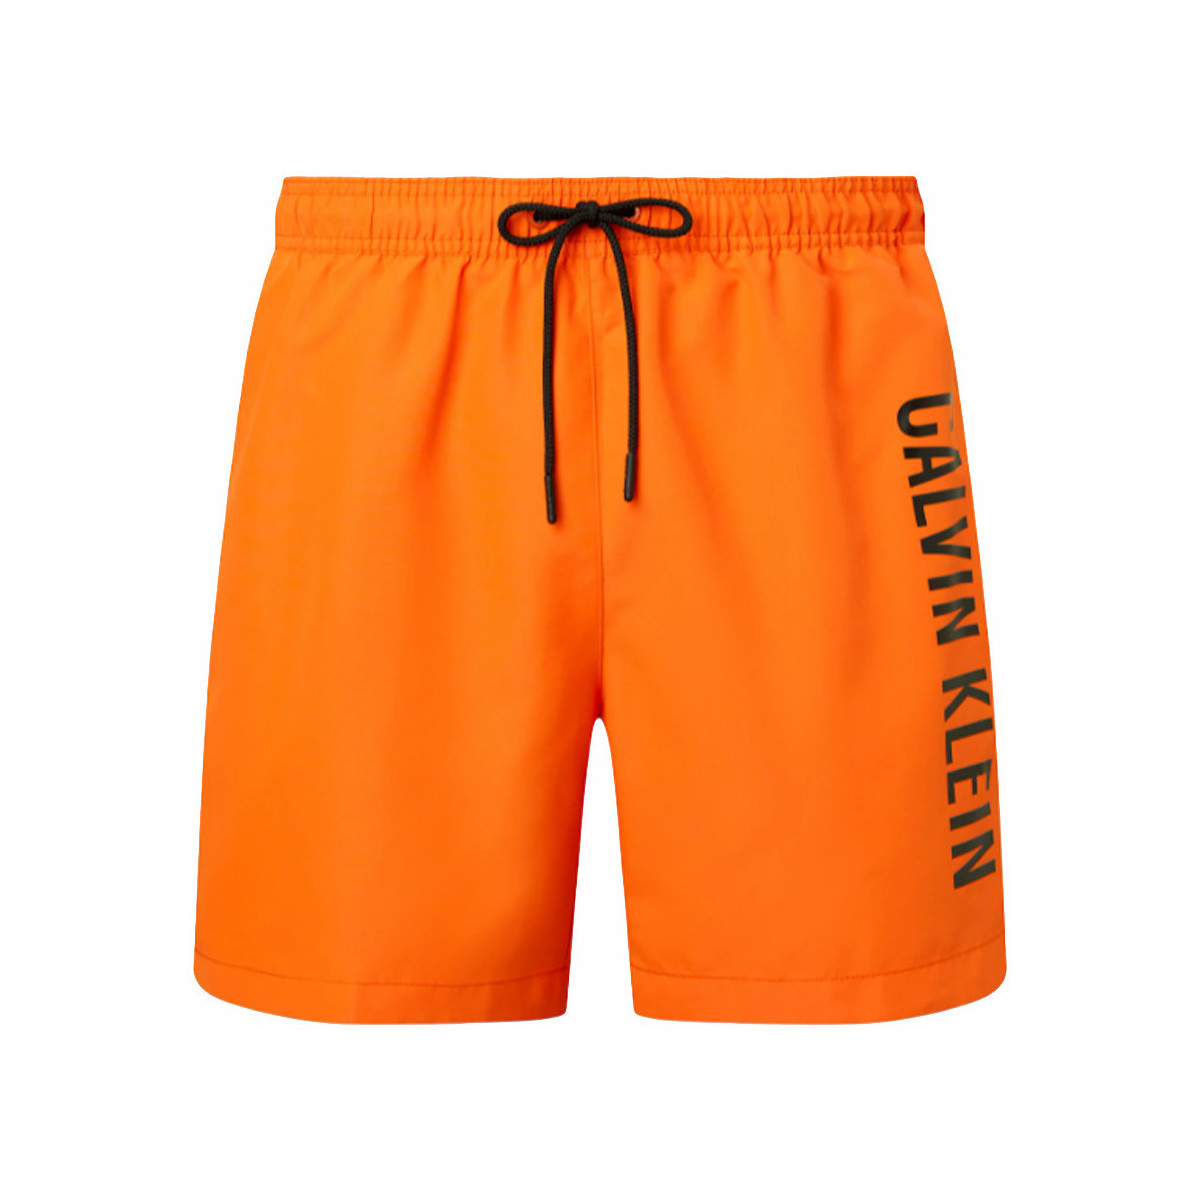 Vêtements Homme Maillots / Shorts de bain Calvin Klein Jeans Intense power Orange